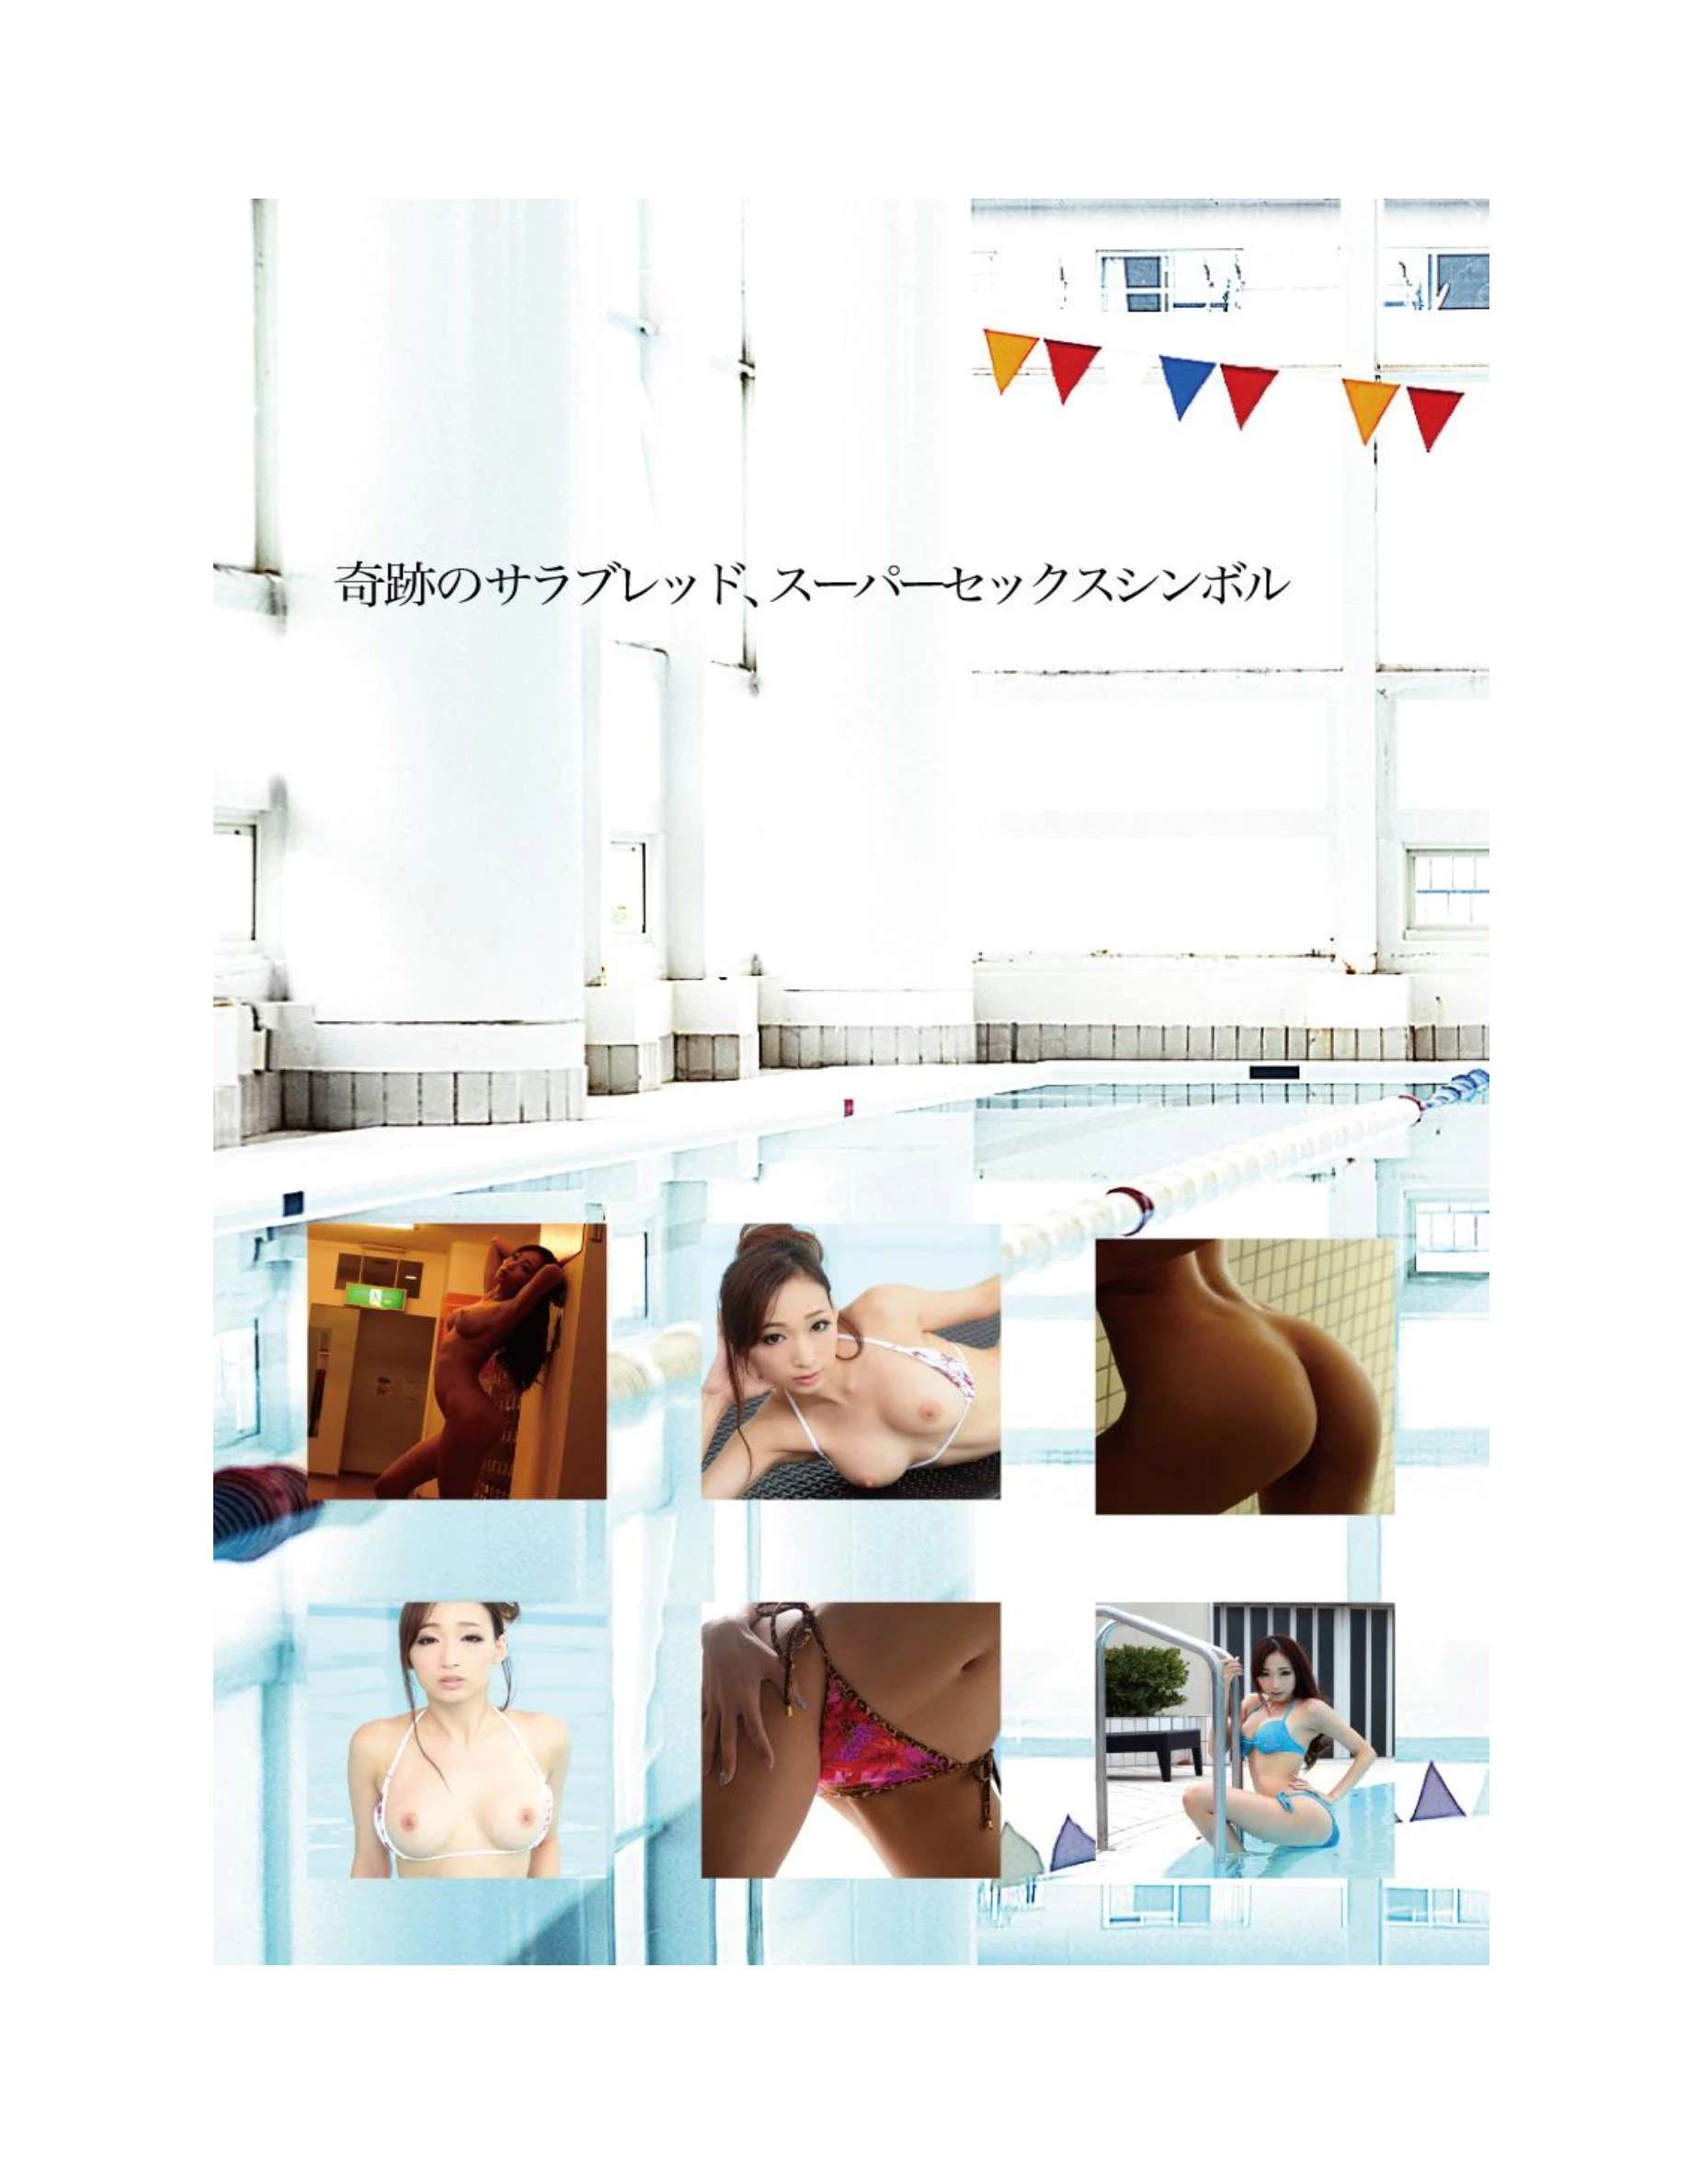 蓮実クレアNUDE PHOTO BOOK 006 綺麗でカッコイイヌード寫真集-4